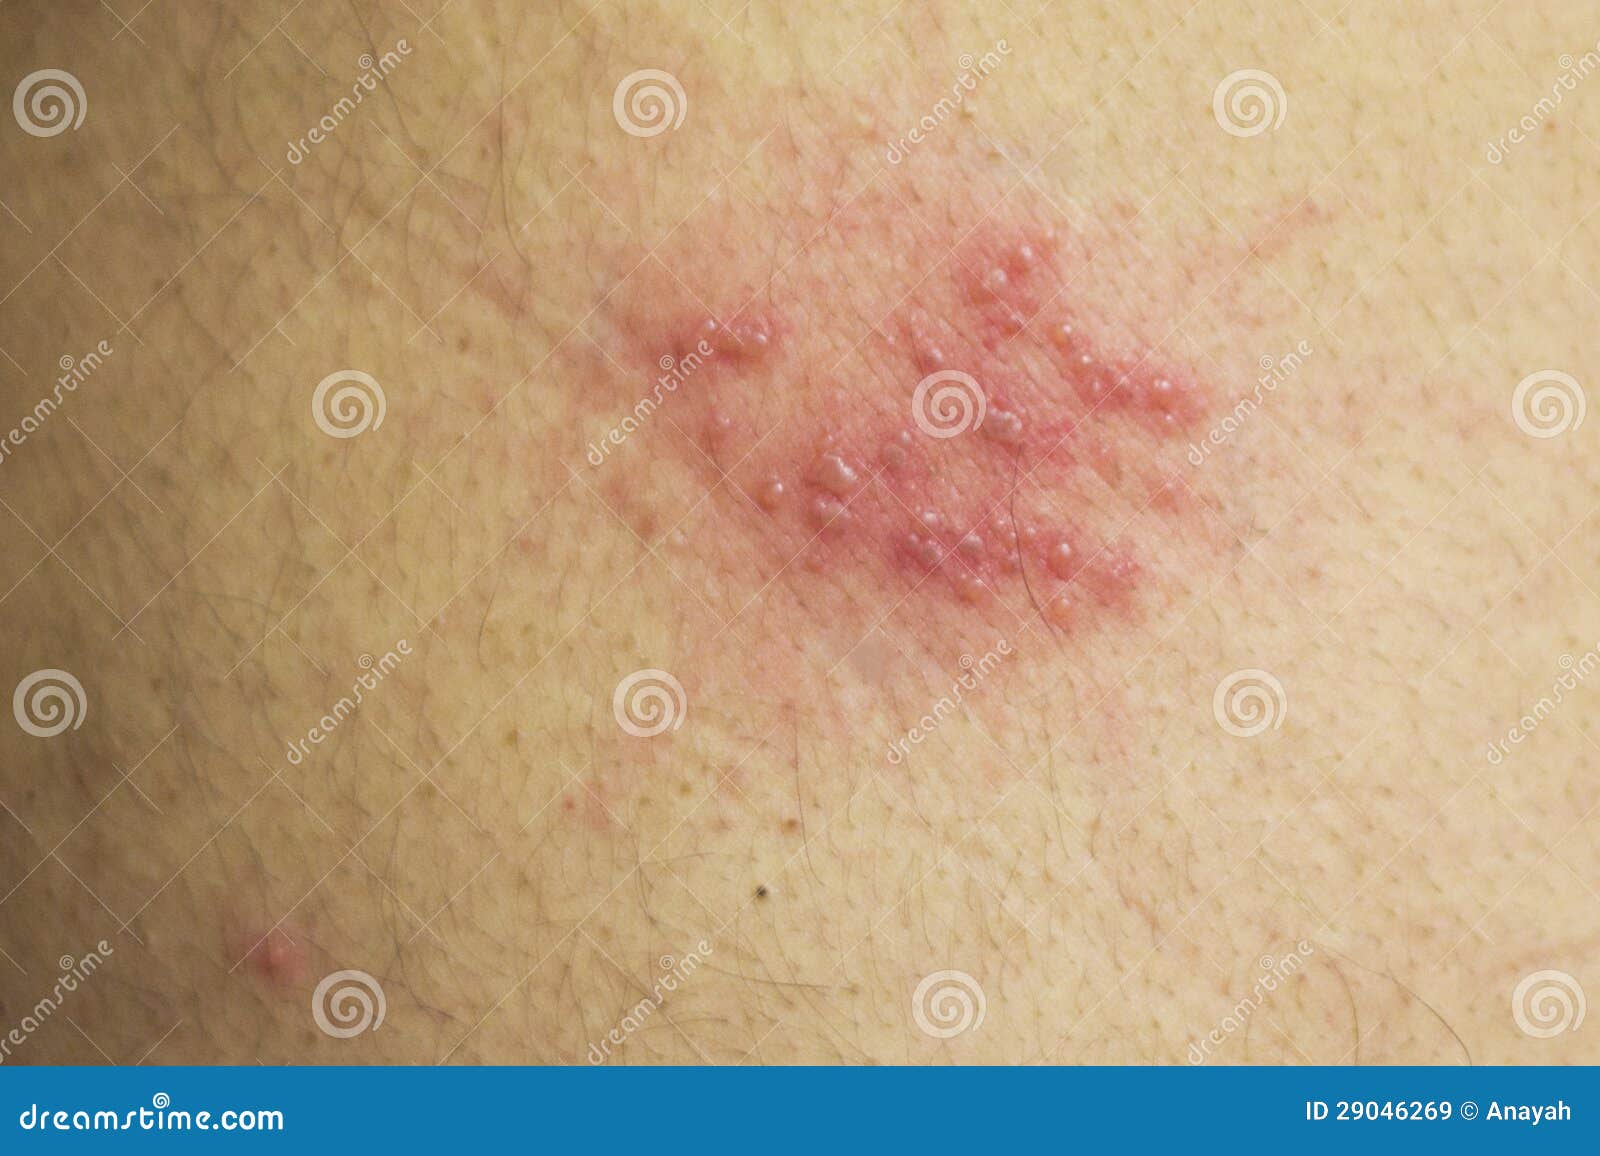 Herpes Simplex Virus | American Skin Association